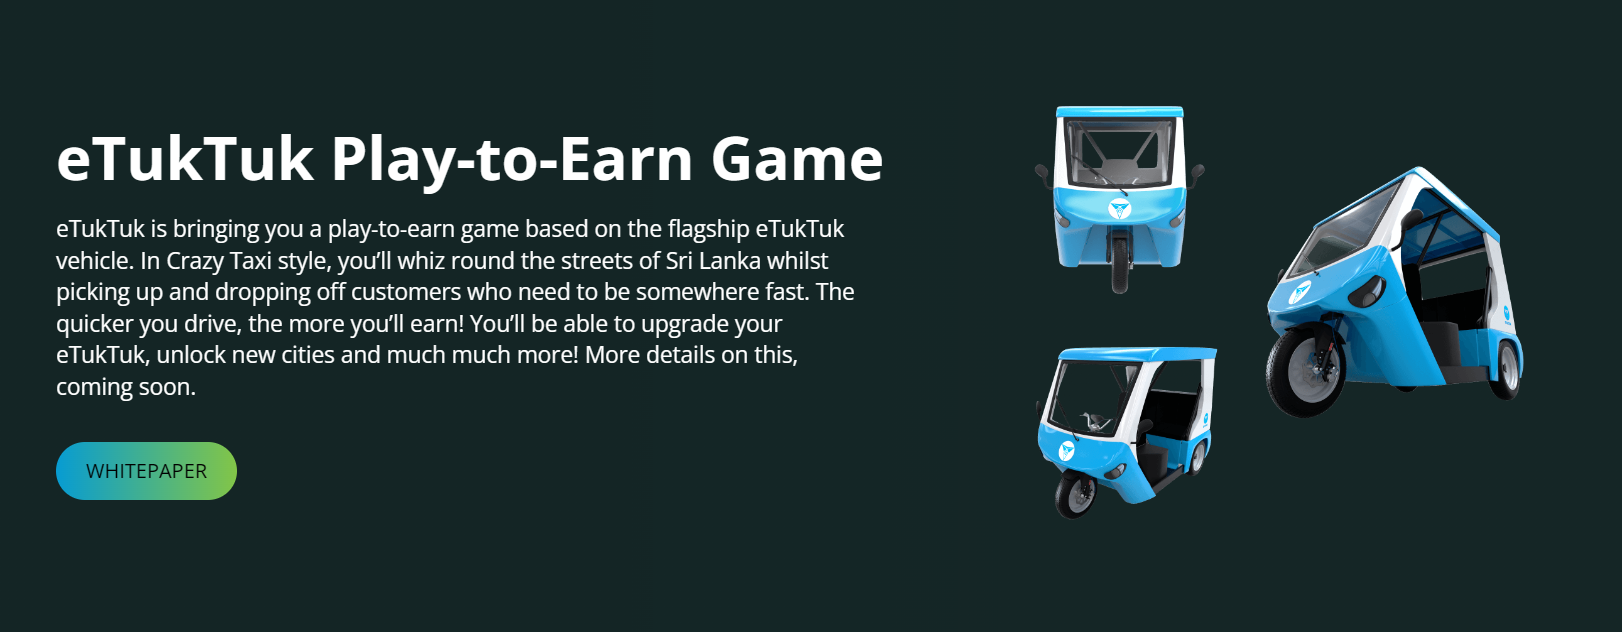 eTukTuk play-to-earn game